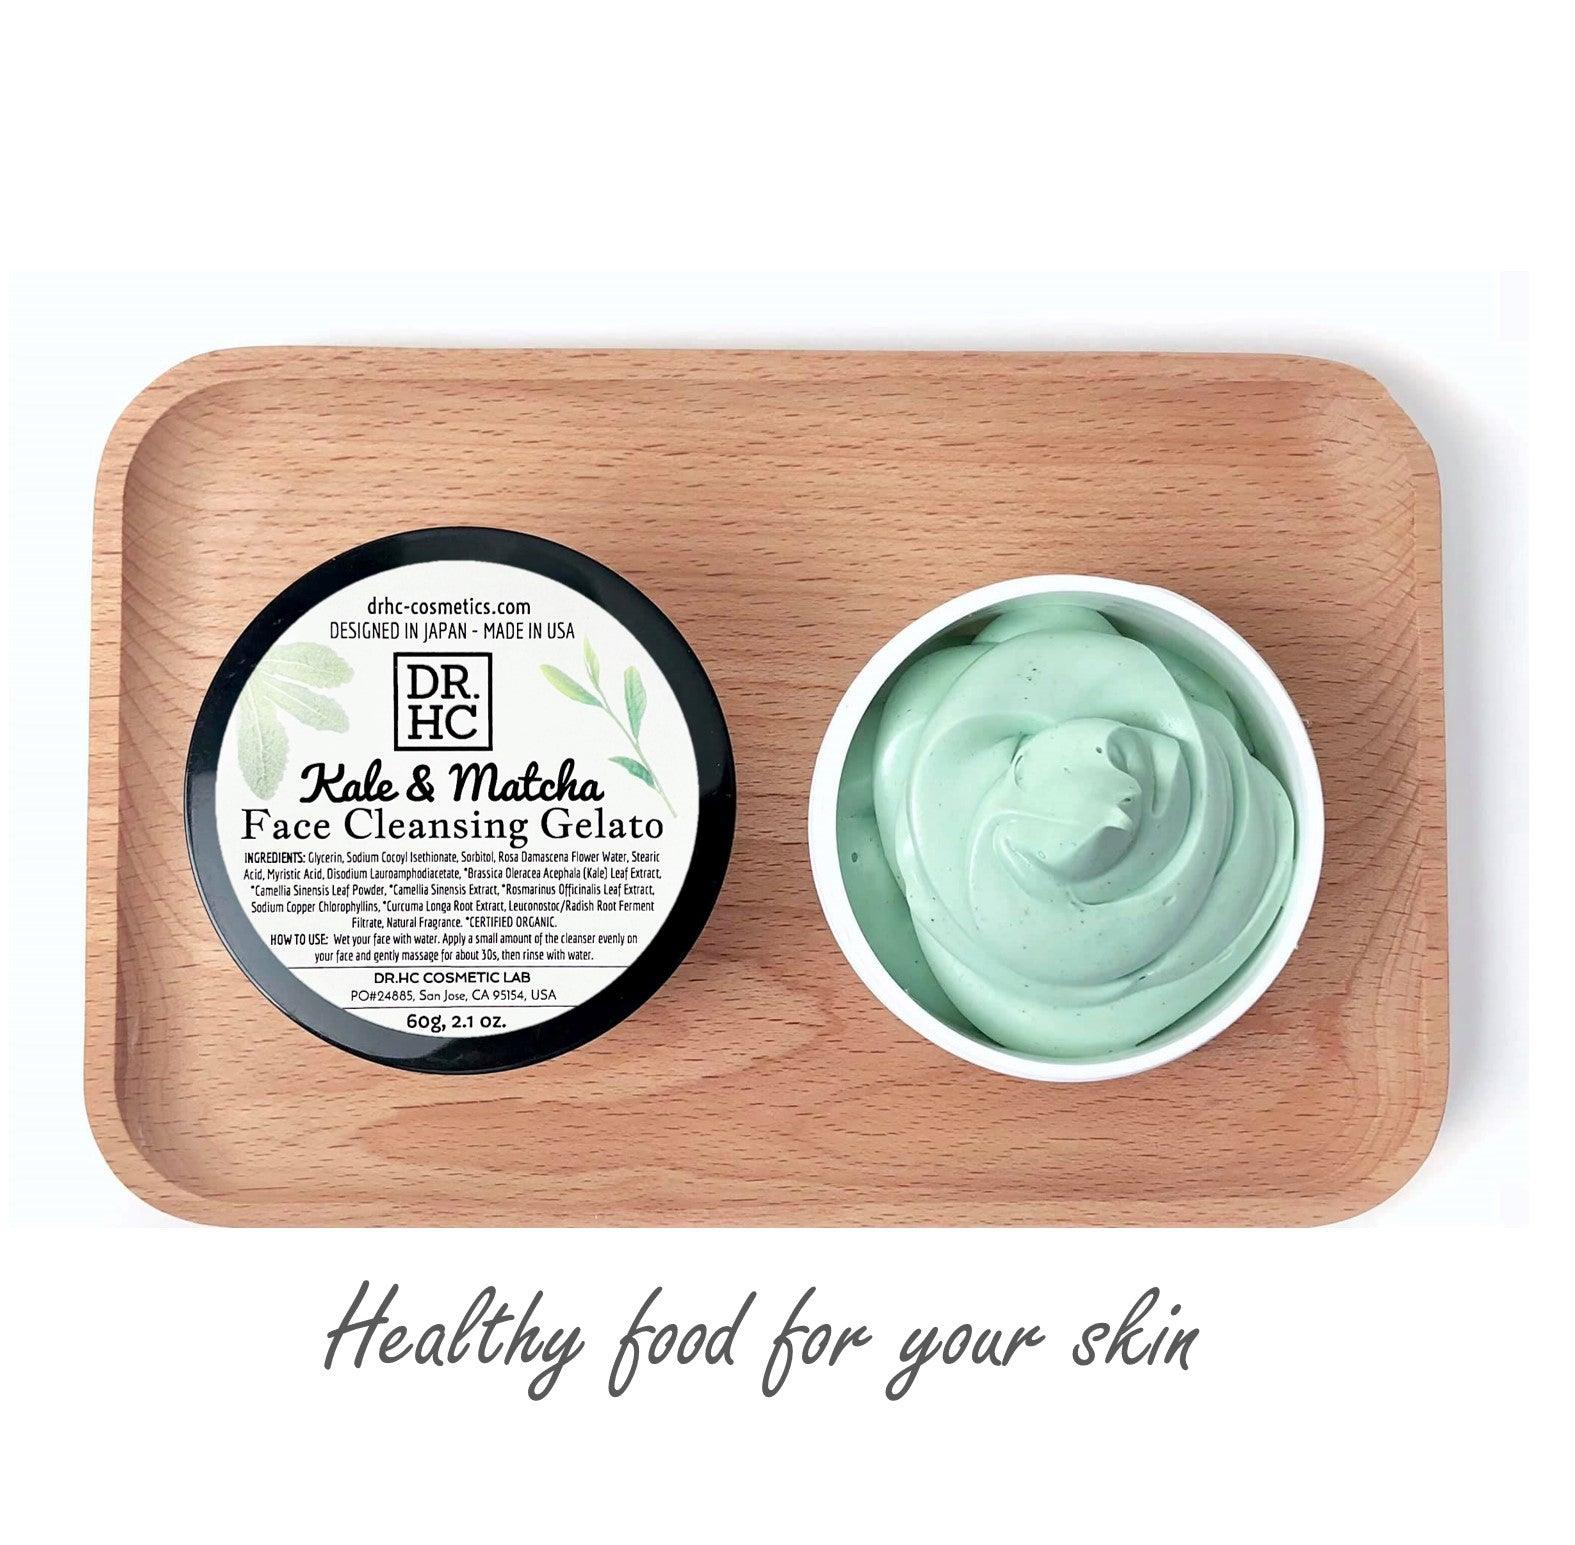 DR.HC Kale & Matcha - Face Cleansing Gelato (60g, 2oz) (Skin brightening, Anti-aging, Anti-inflammatory, Anti-acne...)-4